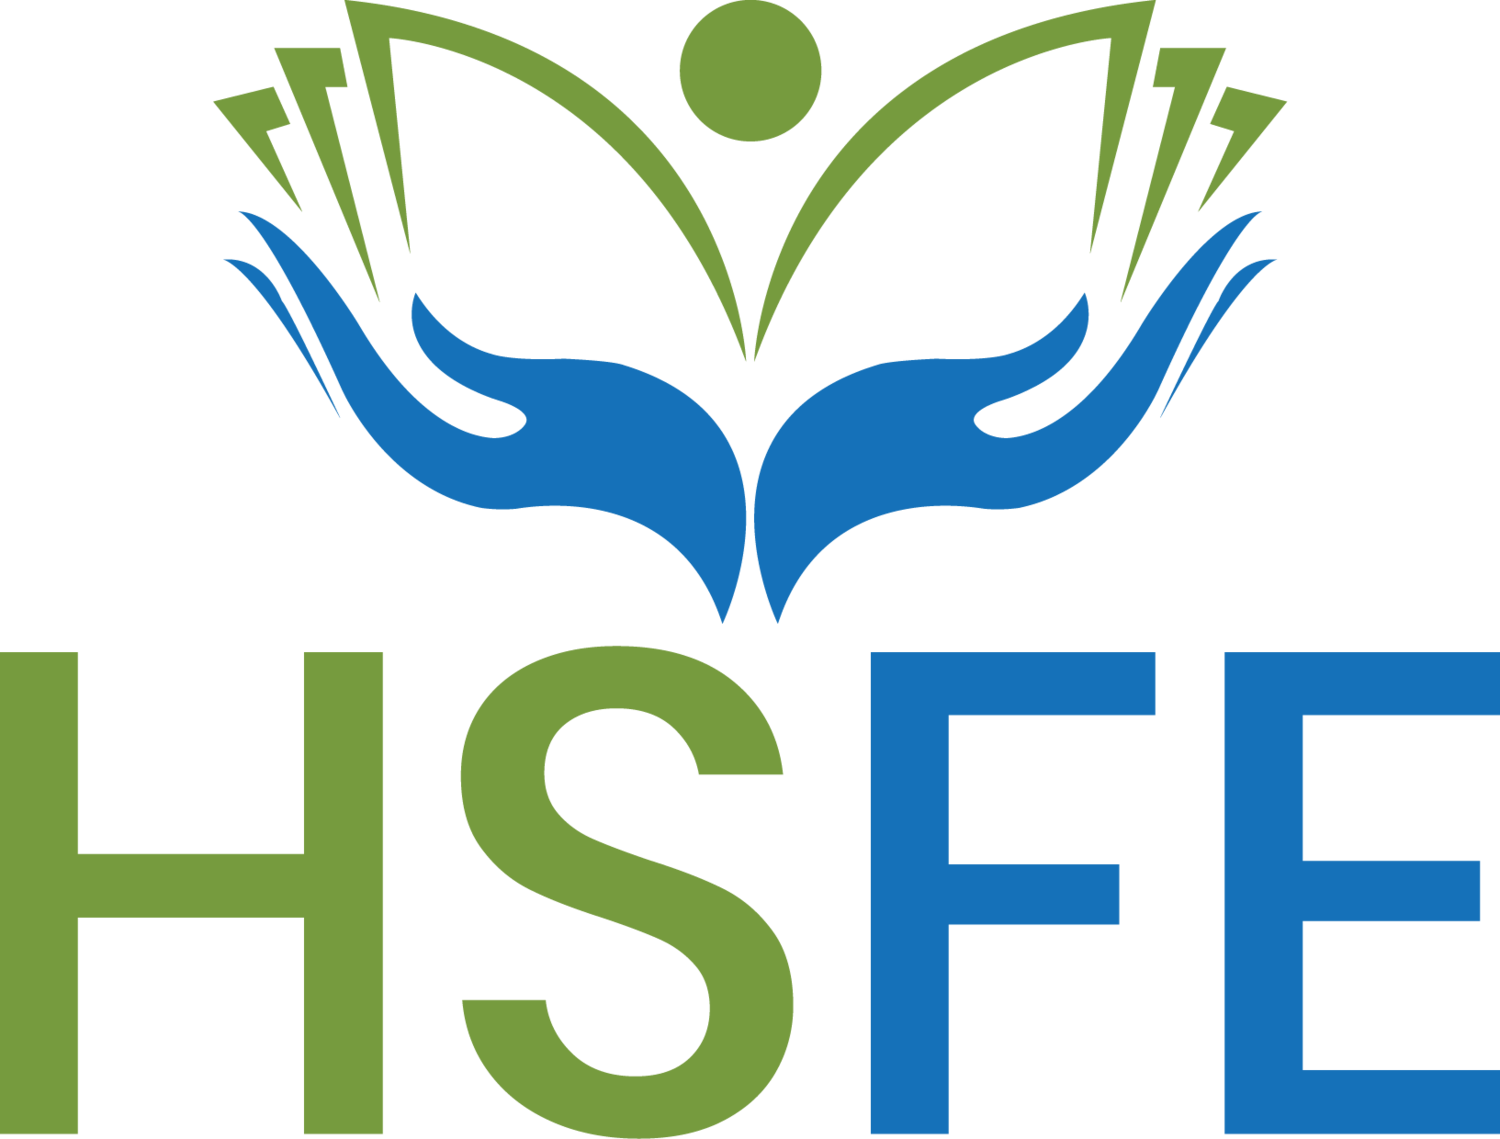 HSFE Ltd